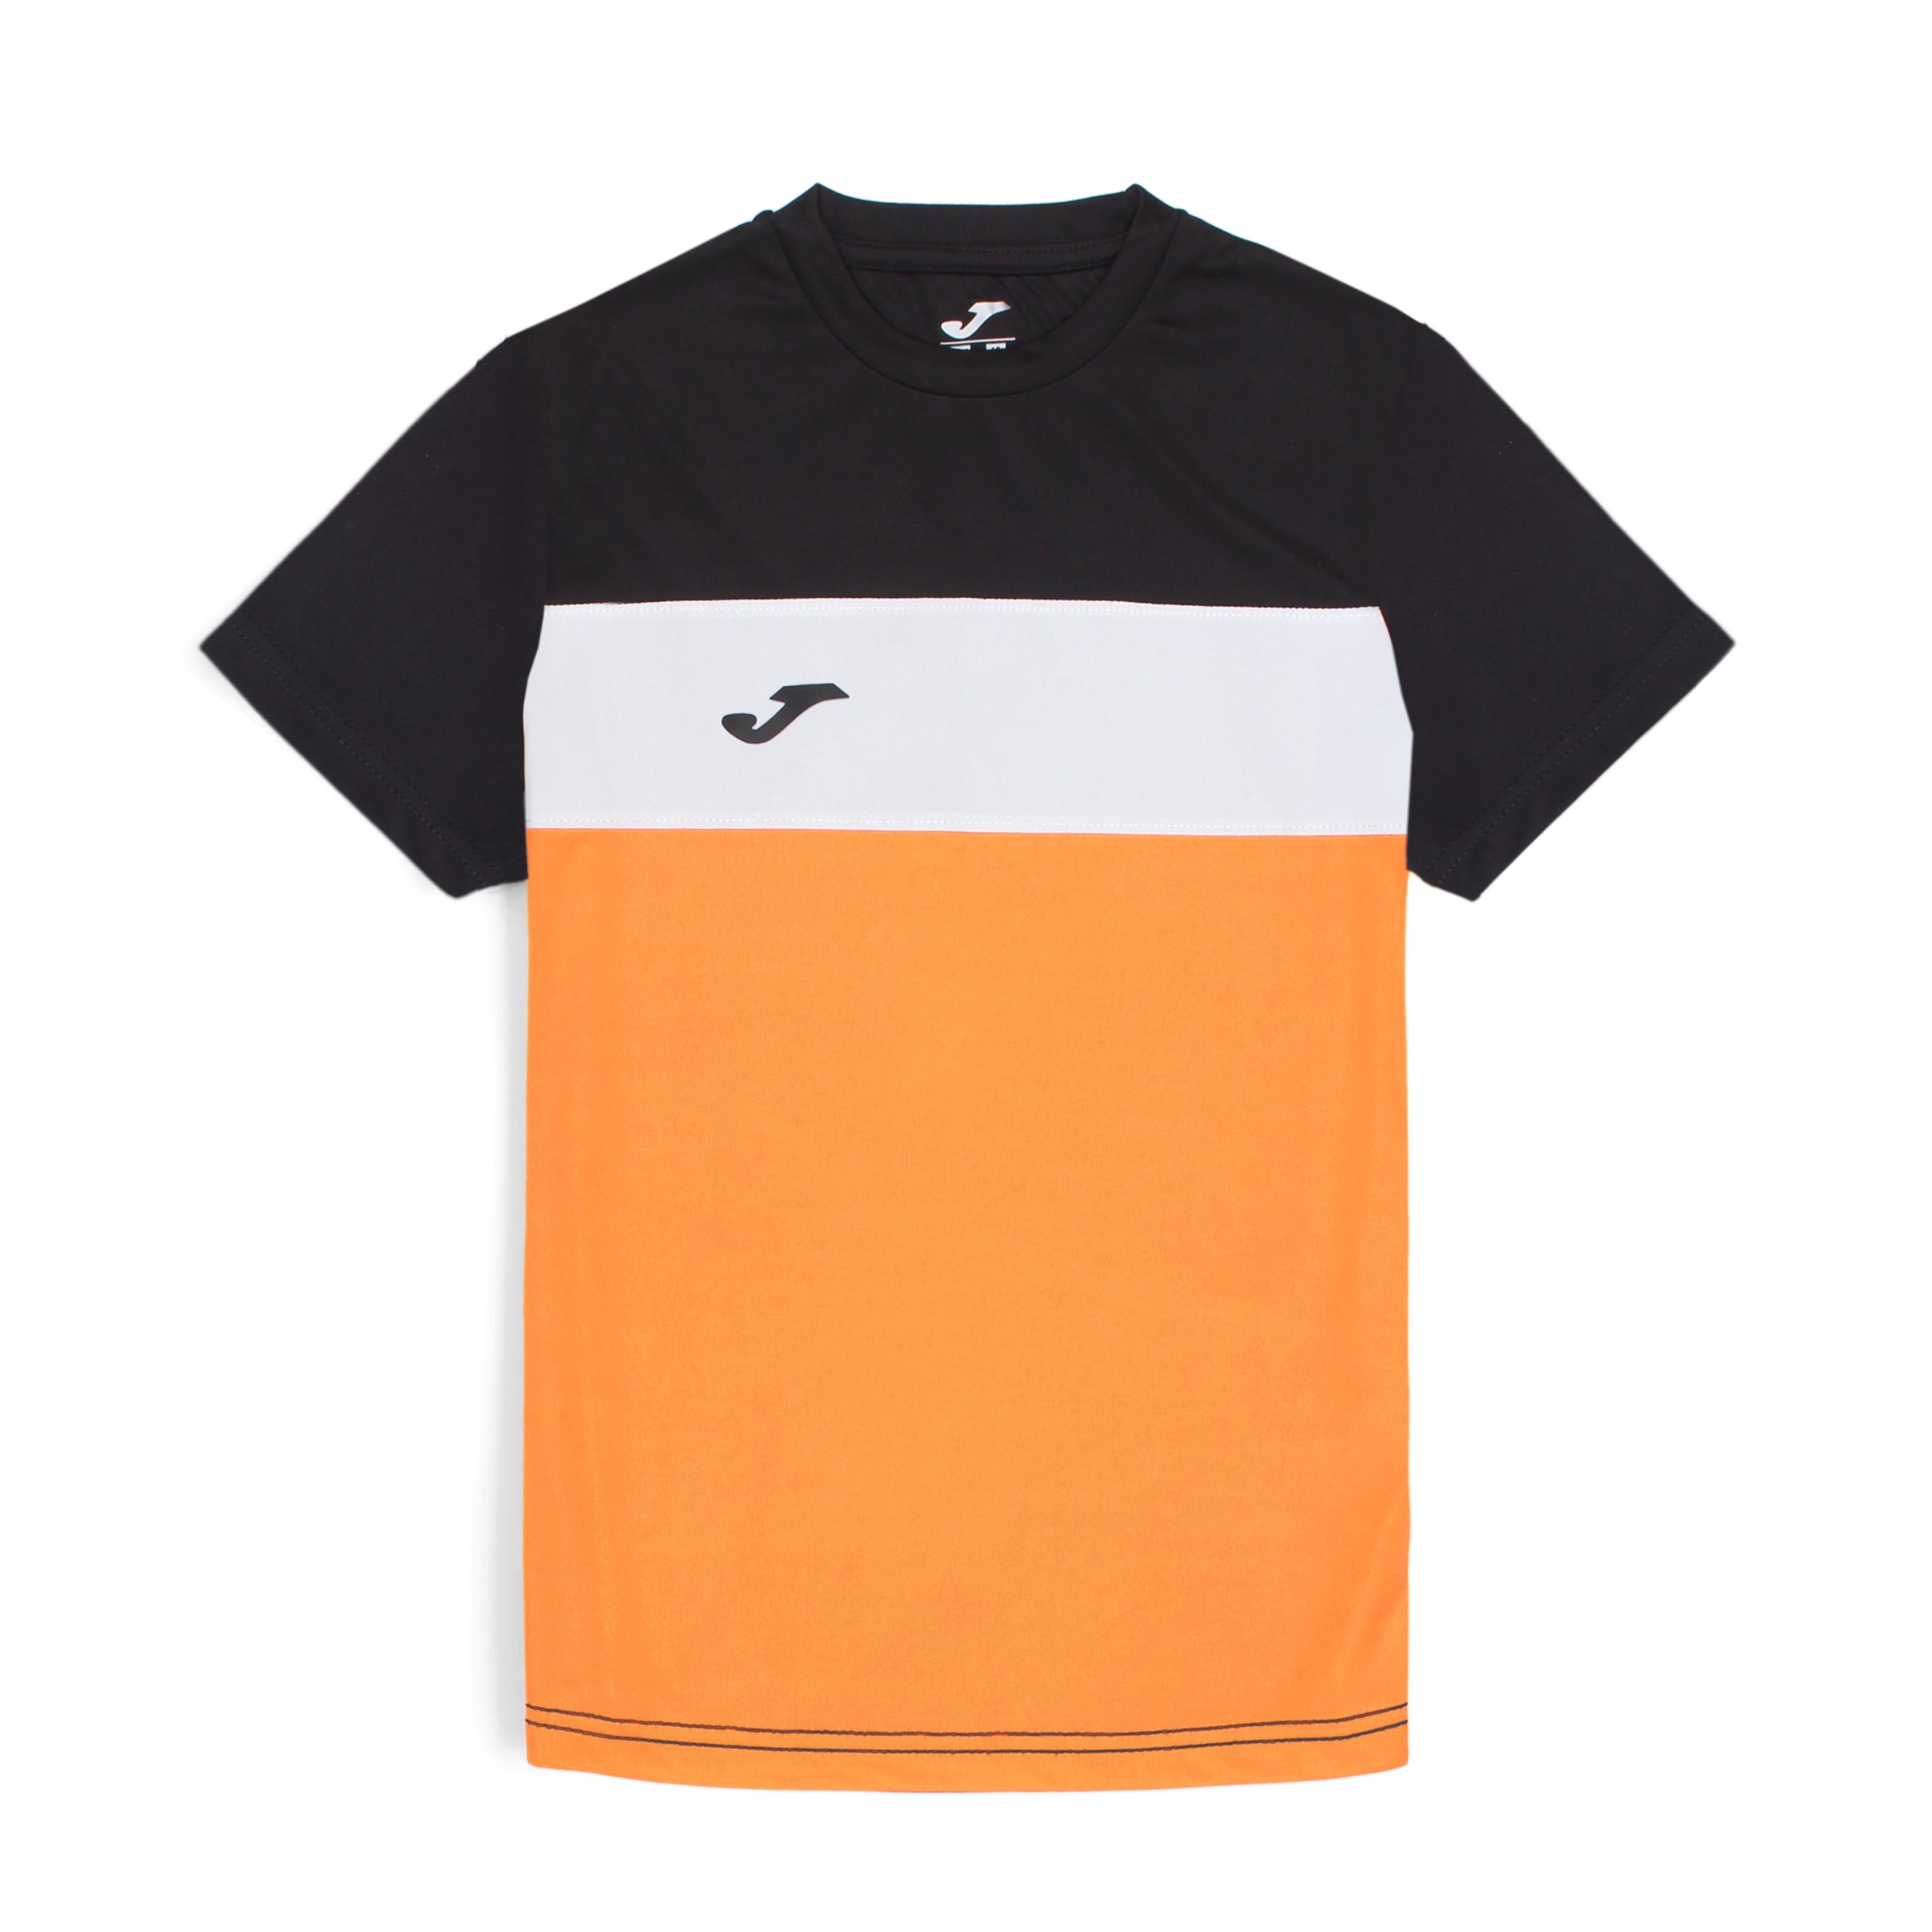 Joma Polyester Ice T-shirt For Boys-KTST-2191Orange Black